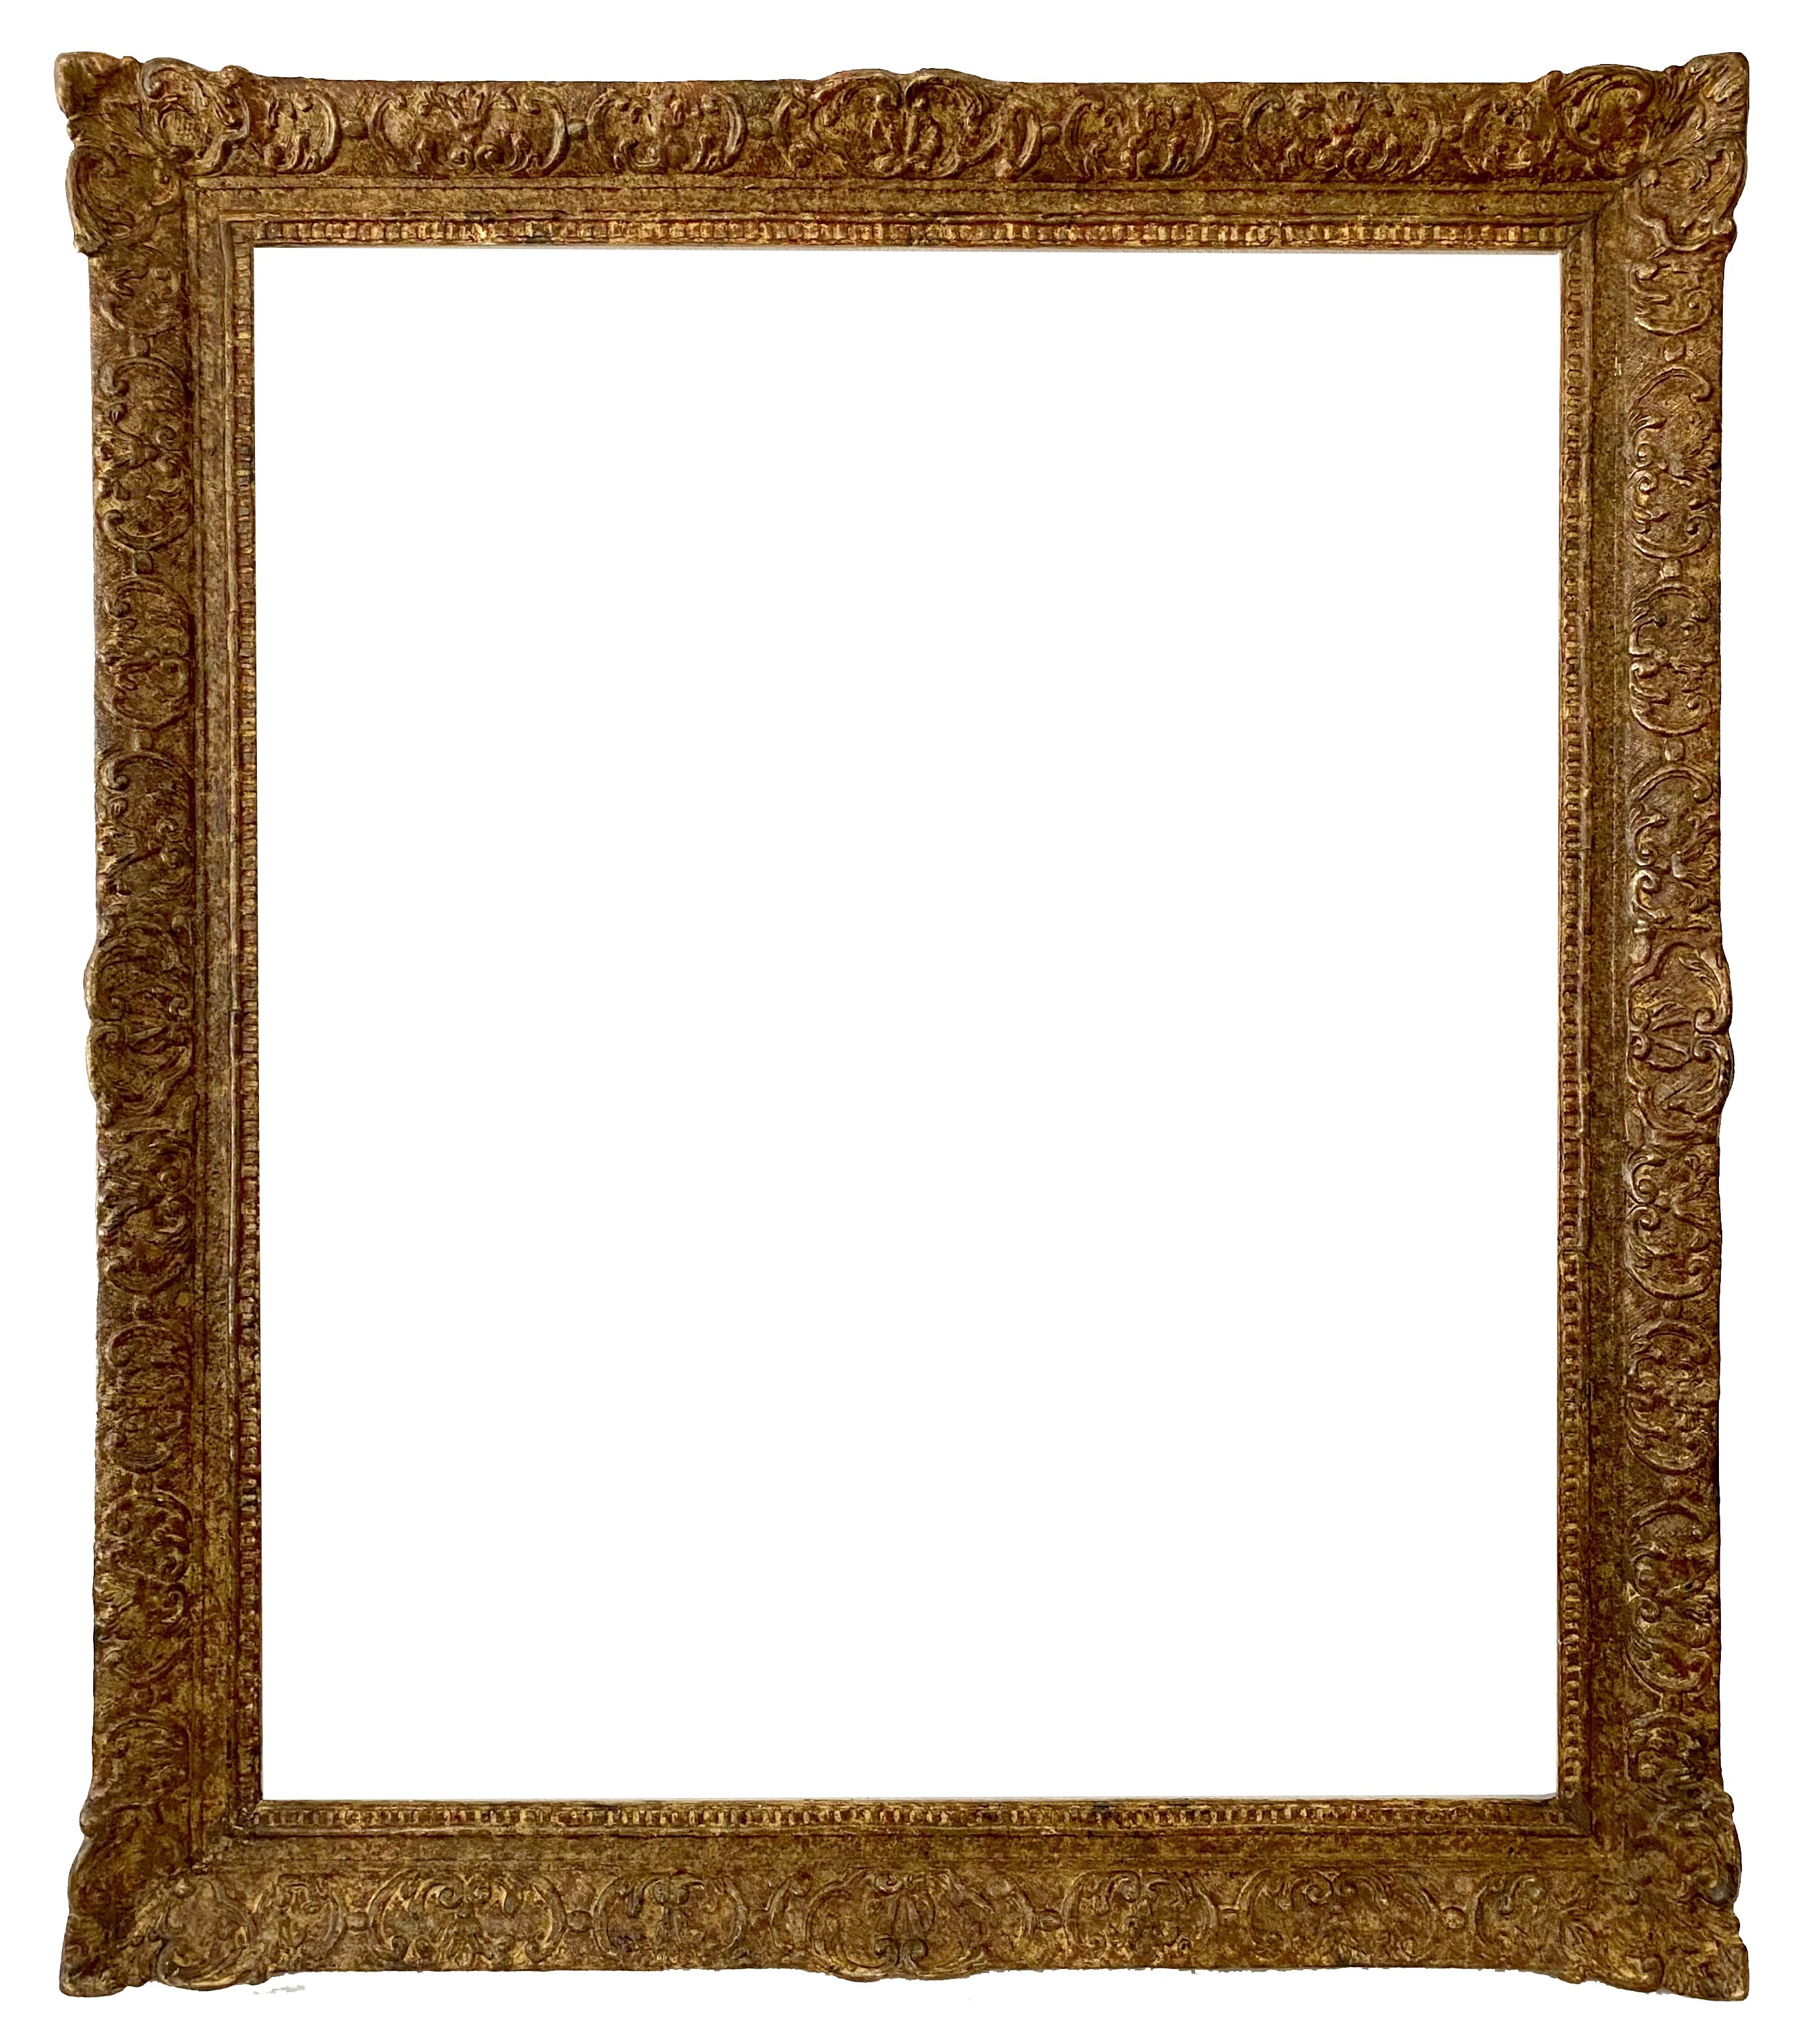 Cadre de style Louis XIV - 78,00 x 65,00 - REF - 1536